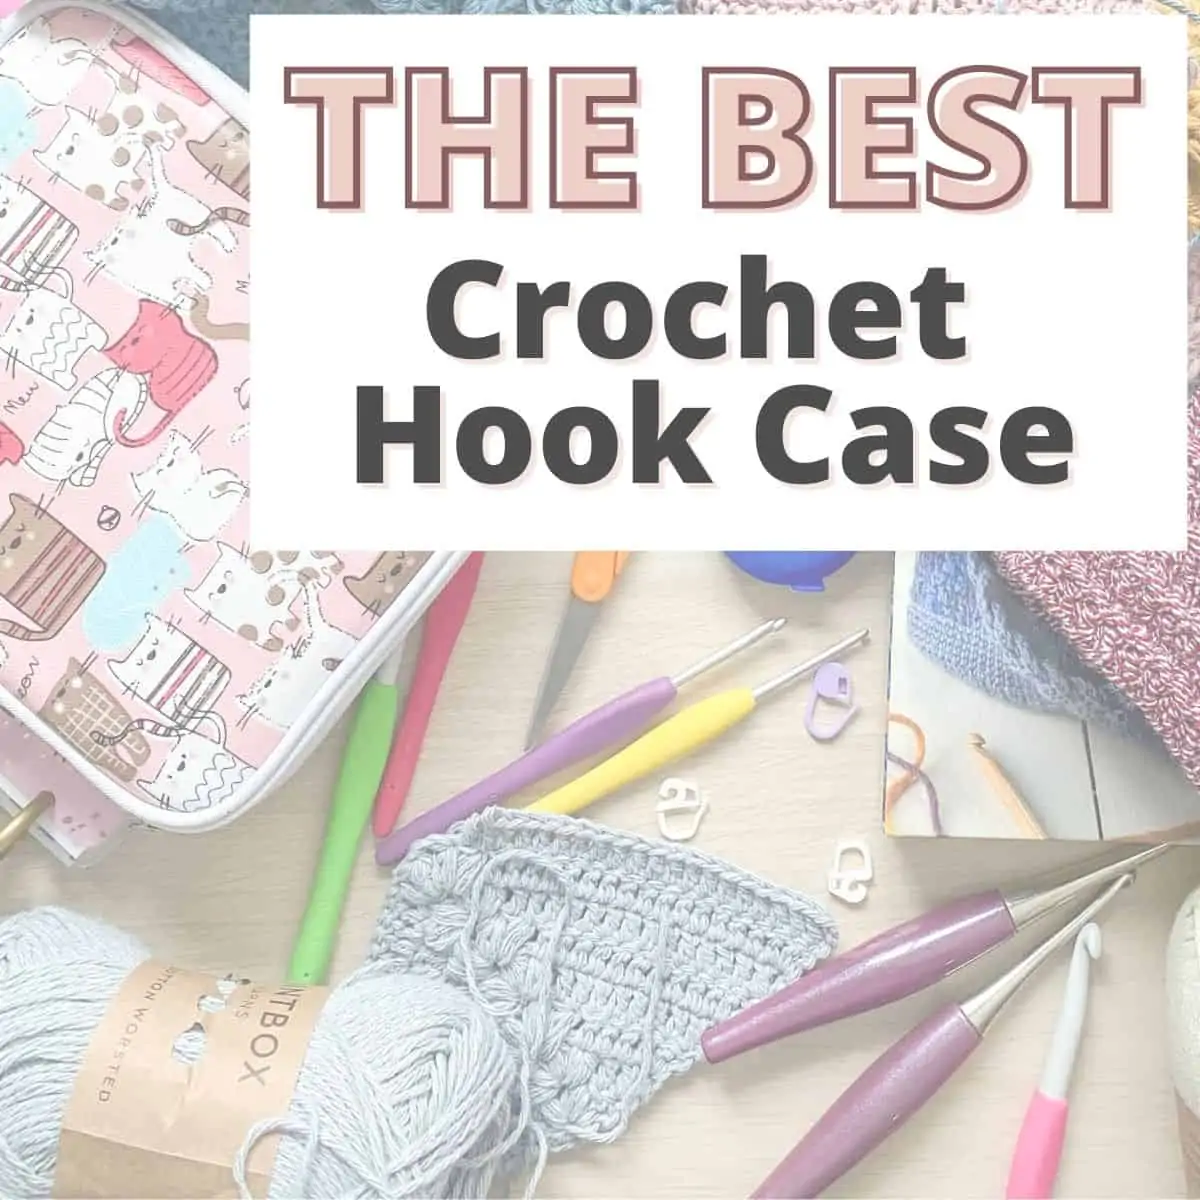 Crochet Hook Holder and Hooks - Ergonomic